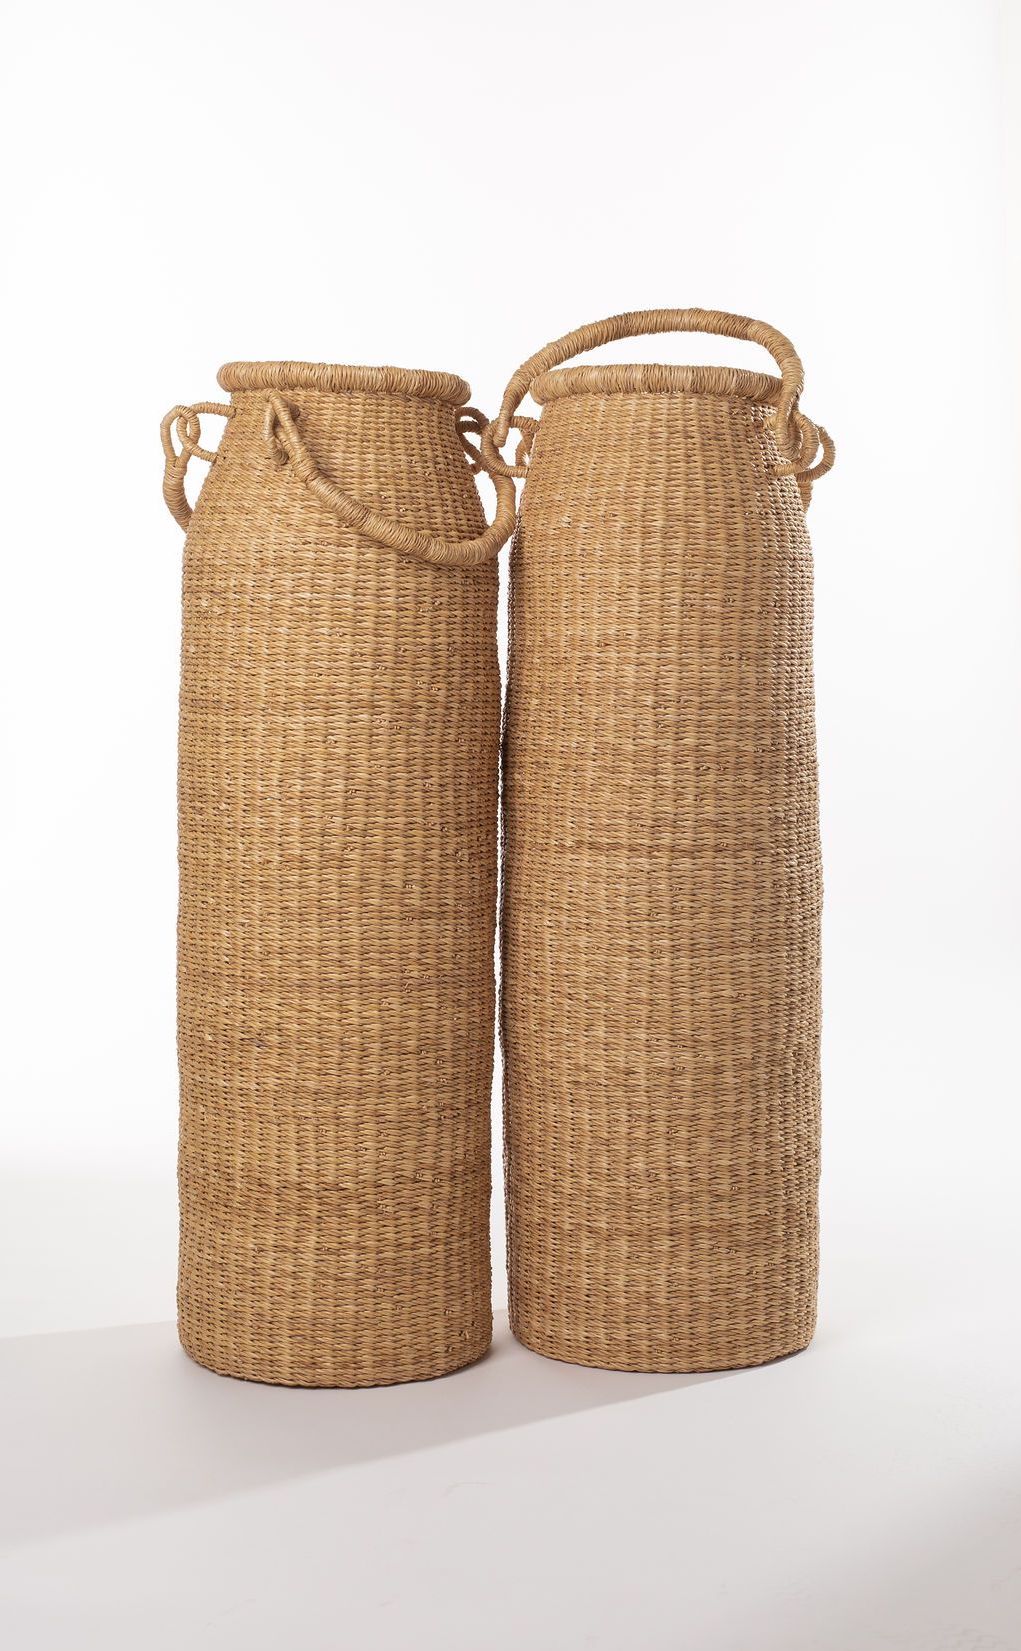 narrow woven baskets